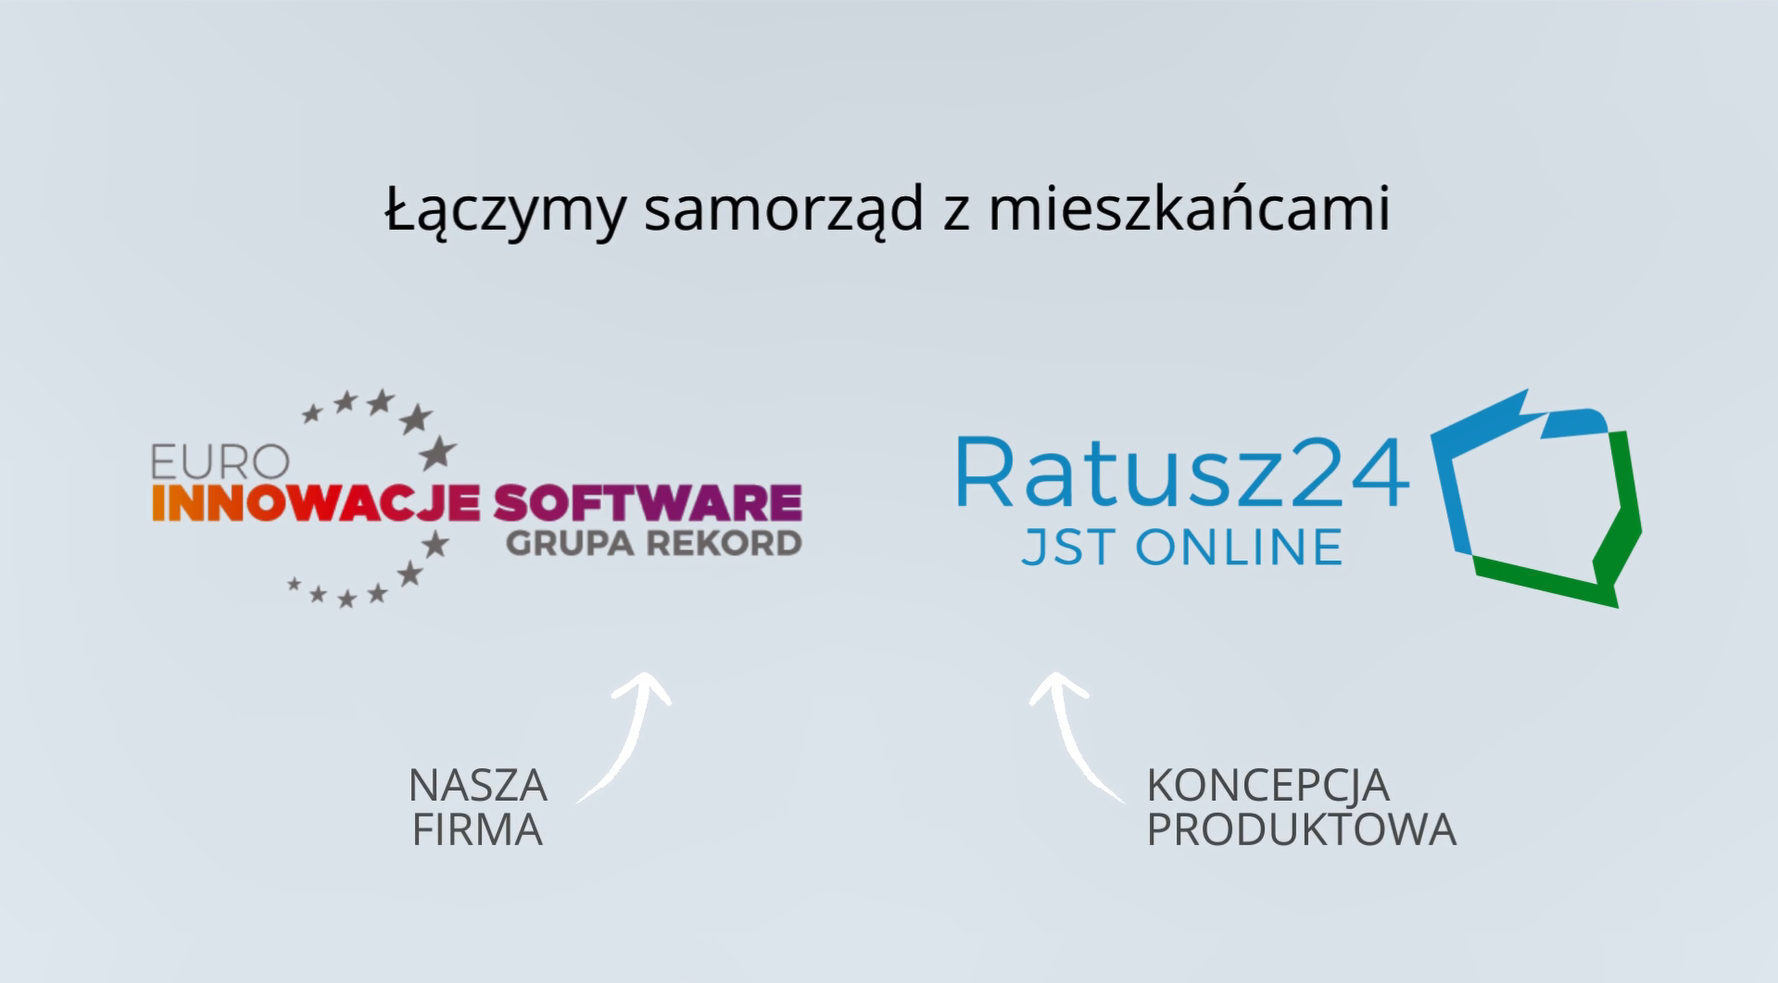 Materiał promujący firmę Euro Innowacje Software Sp. z o.o. w związku z konferencją Smart City Wielkopolska 2022.